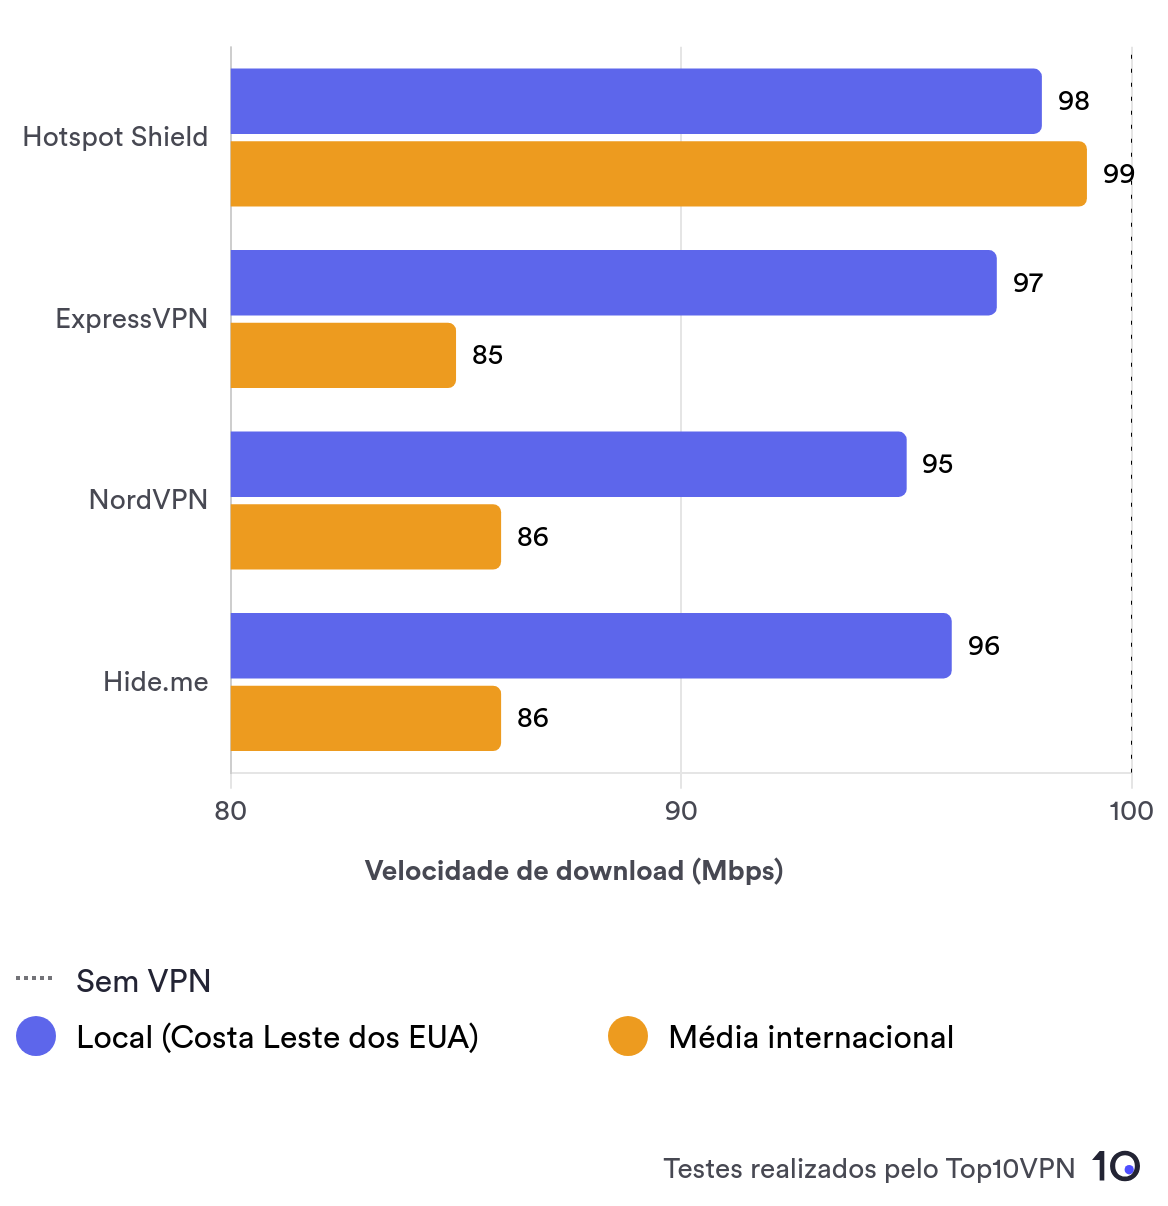 Gráfico de barras comparando as velocidades locais e de longa distância do Hotspot Shield às de outras das melhores VPNs.